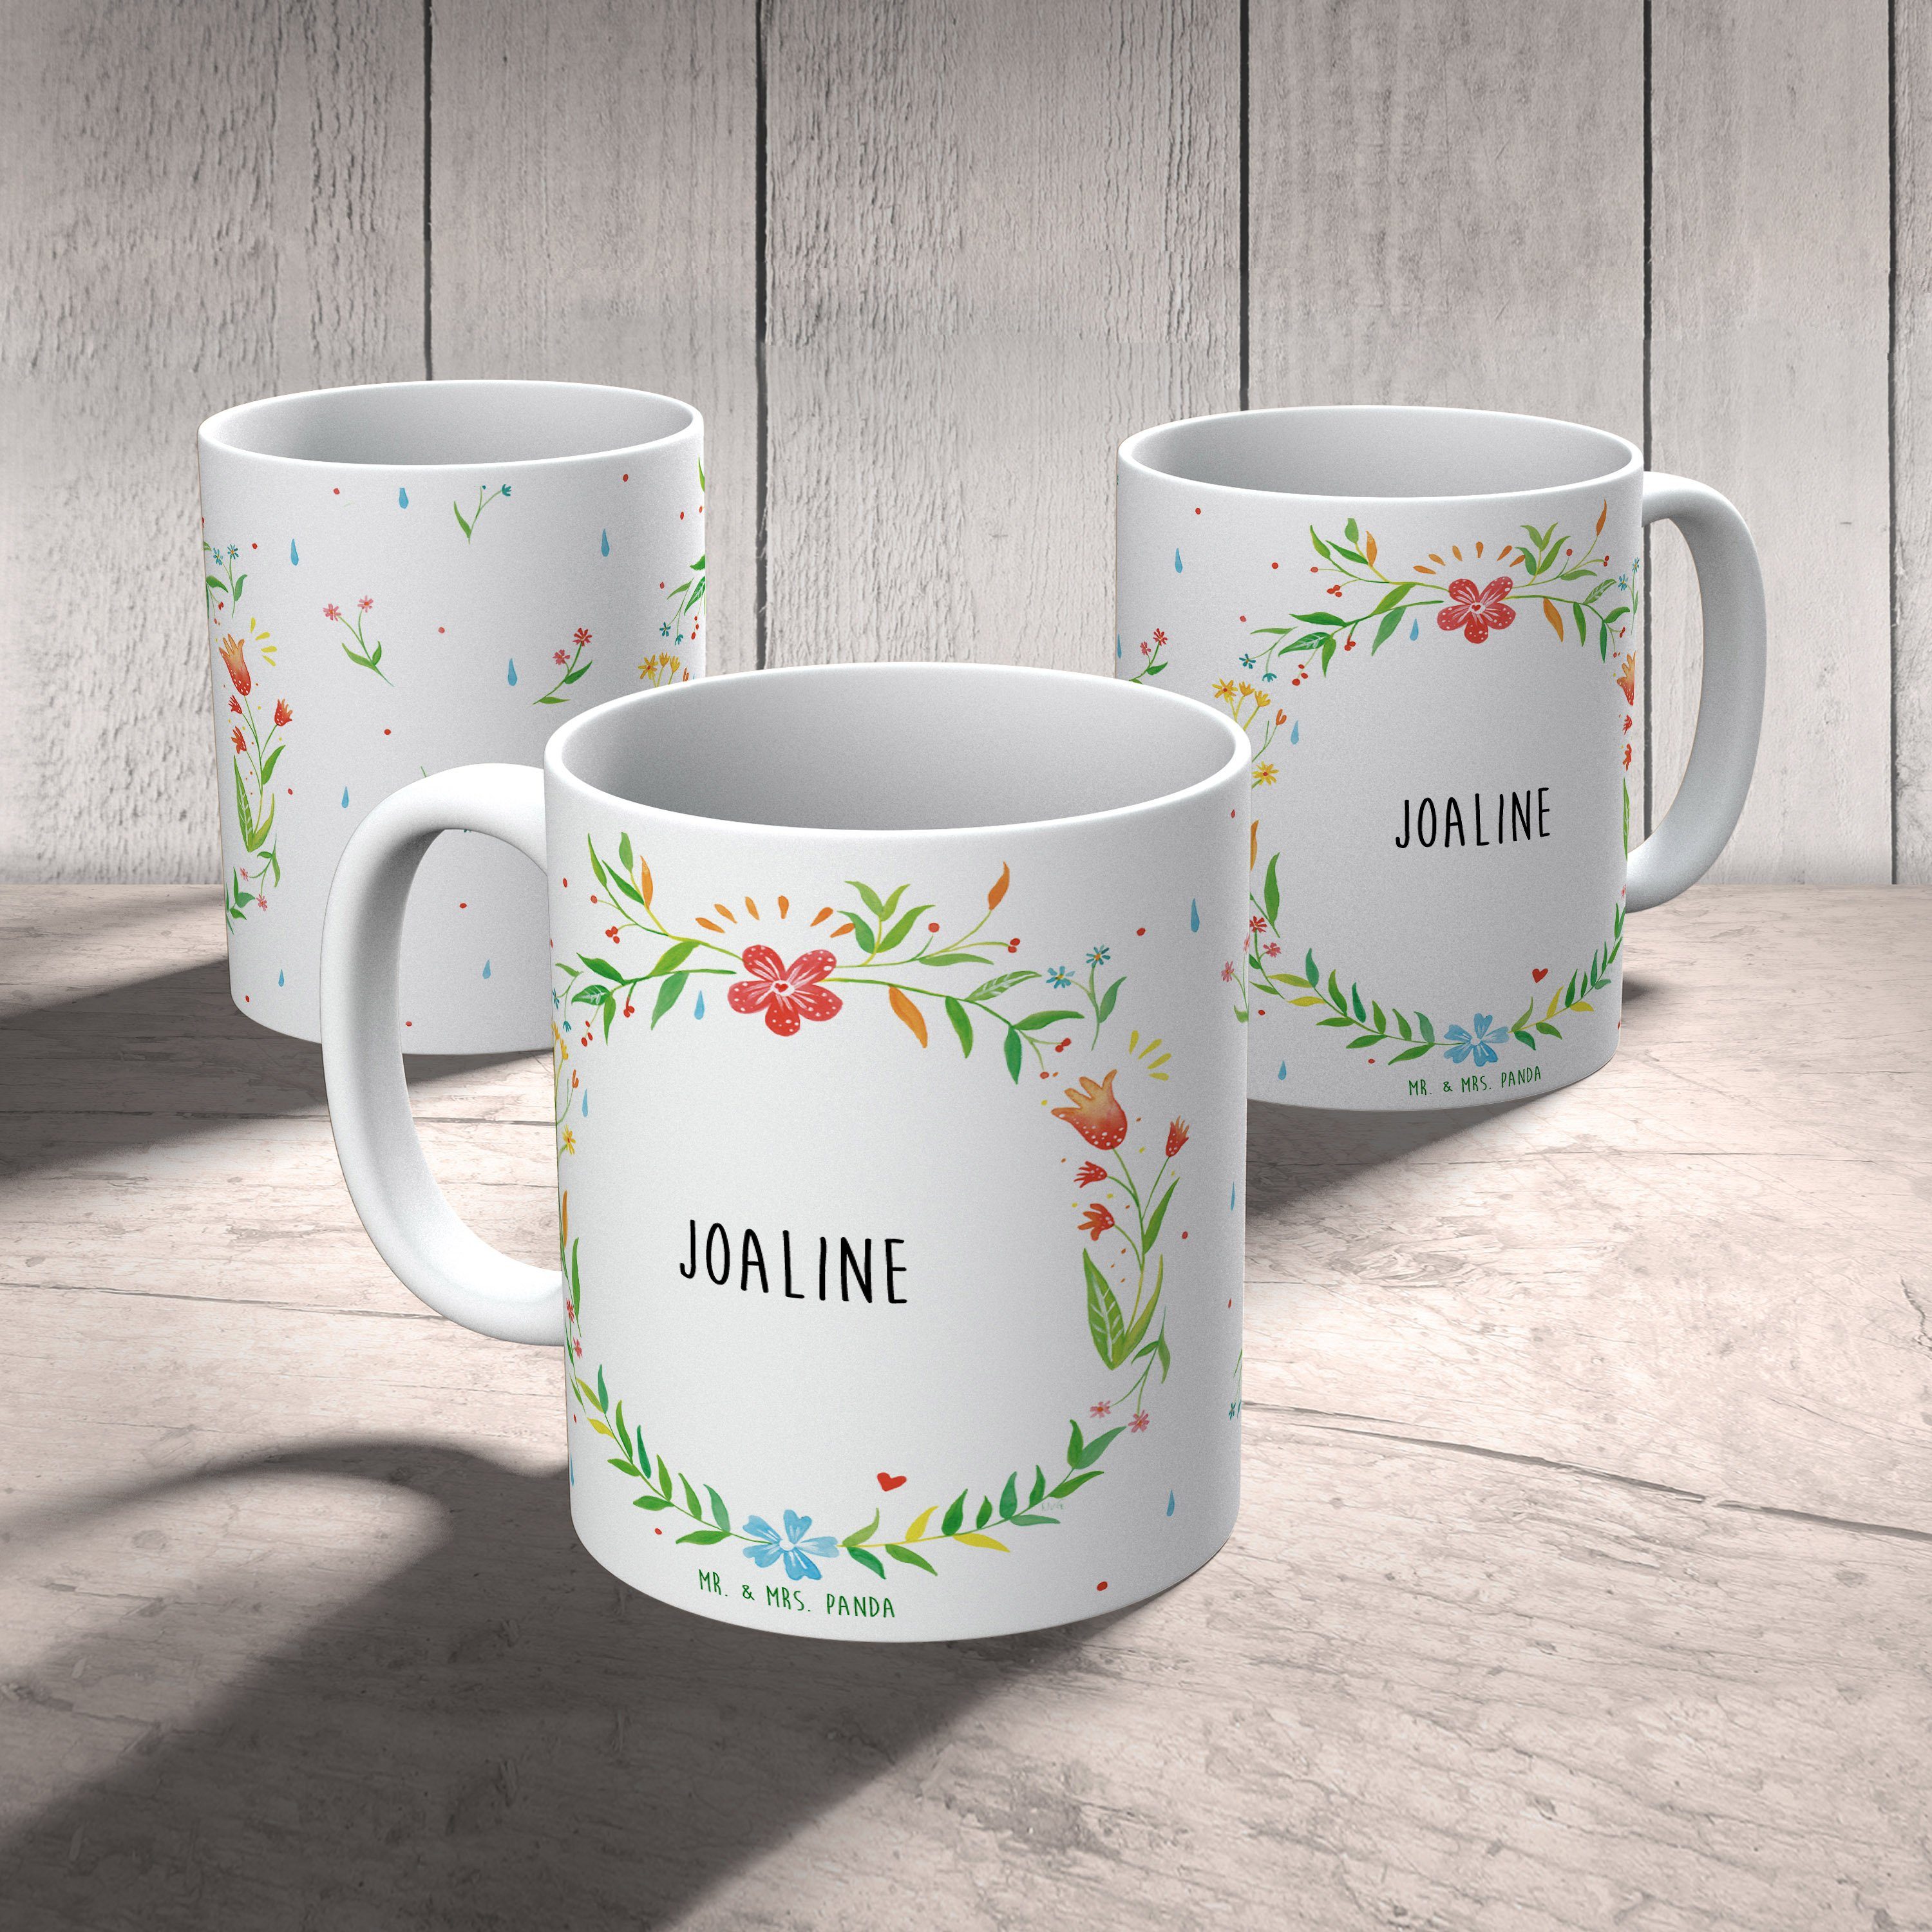 Mr. & Mrs. Tasse Joaline Kaffeebecher, Kaffeetasse, Geschenk Tasse, Panda Keramik - Geschenk, Tasse